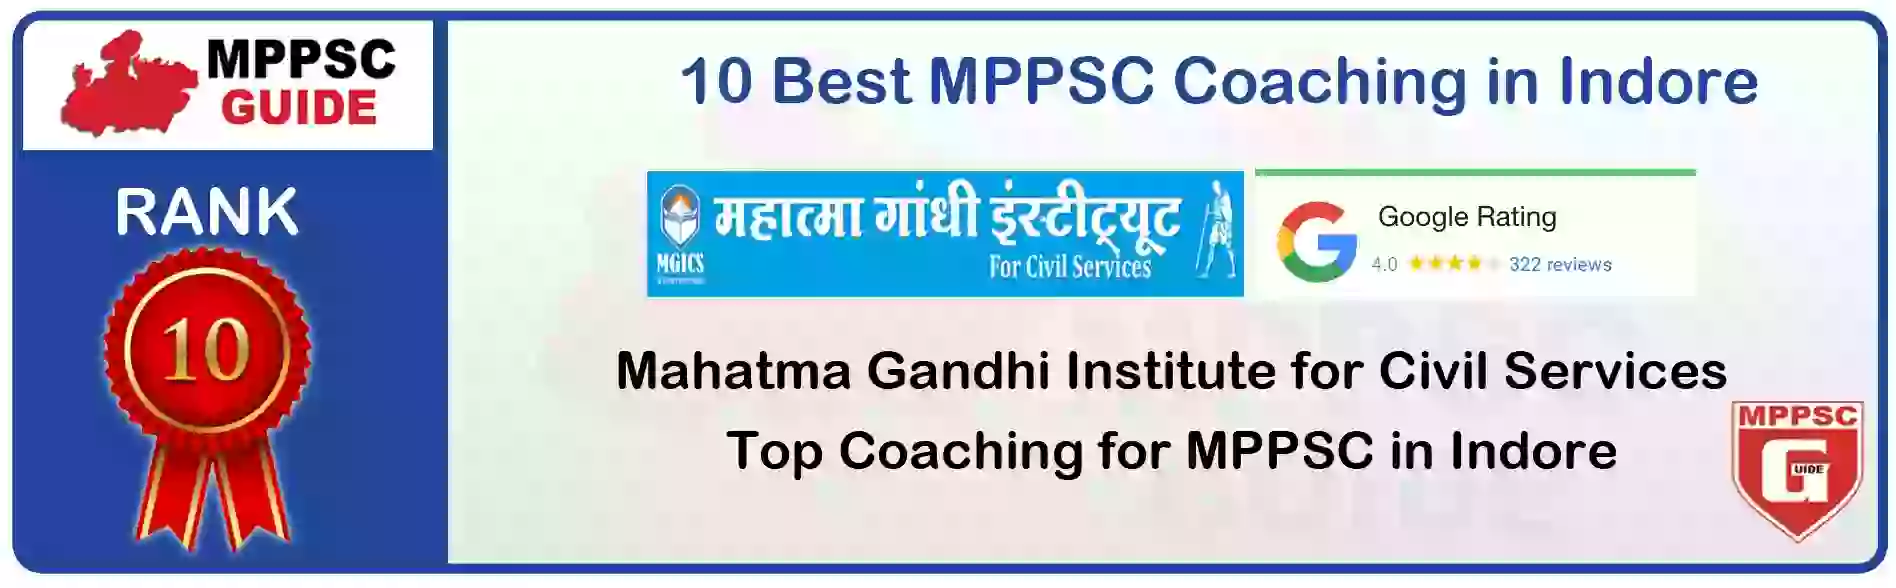 MPPSC Coaching in Kundeshwar, MPPSC Coaching Institute In Kundeshwar, Best MPPSC Coaching in Kundeshwar, Top 10 MPPSC Coaching In Kundeshwar, best mppsc coaching institute in Kundeshwar, MPPSC Coaching Classes In Kundeshwar, MPPSC Online Coaching In Kundeshwar, mppsc coaching in Kundeshwar bhanwarkua